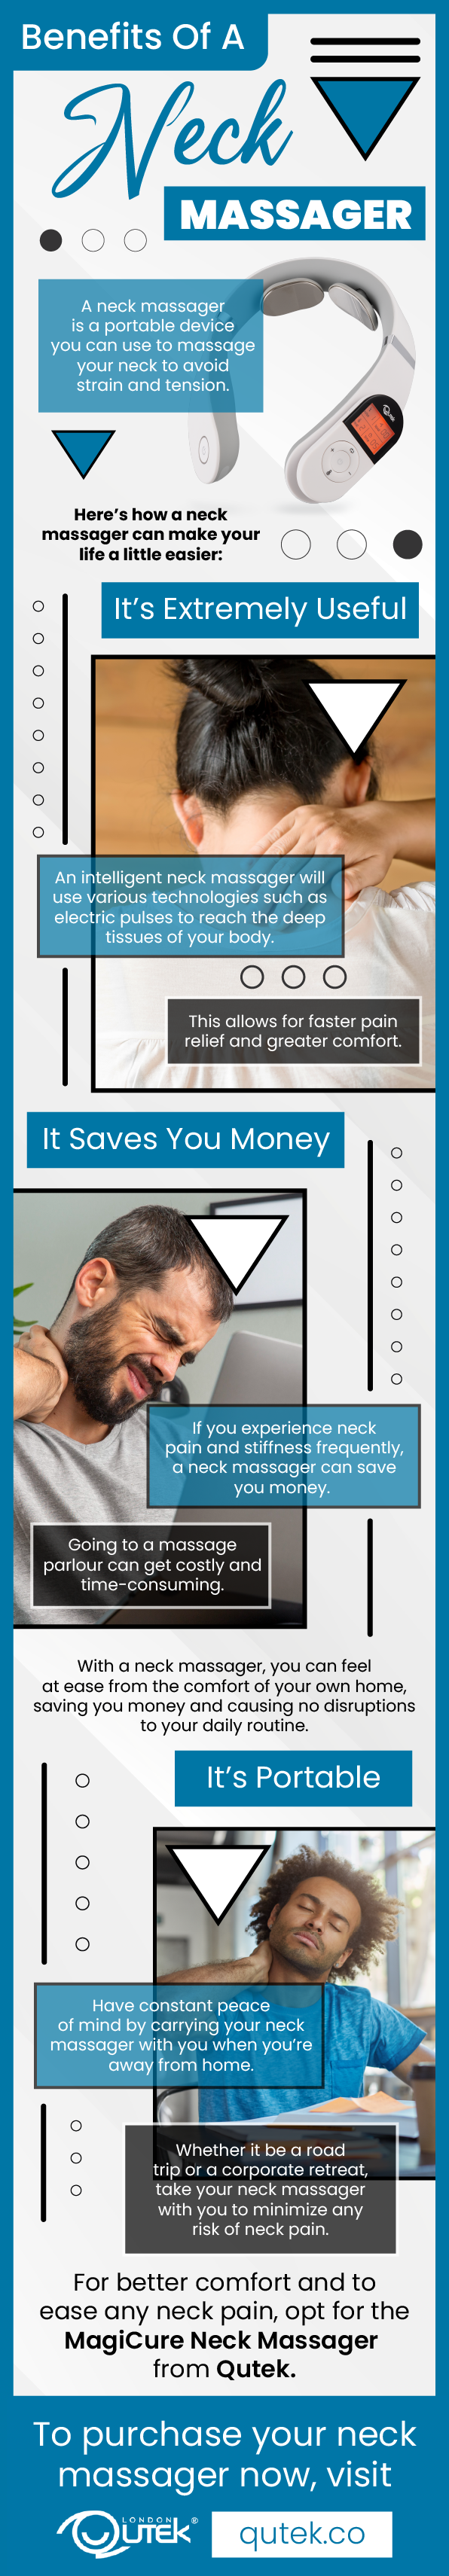 Benefits Of A Neck Massager 